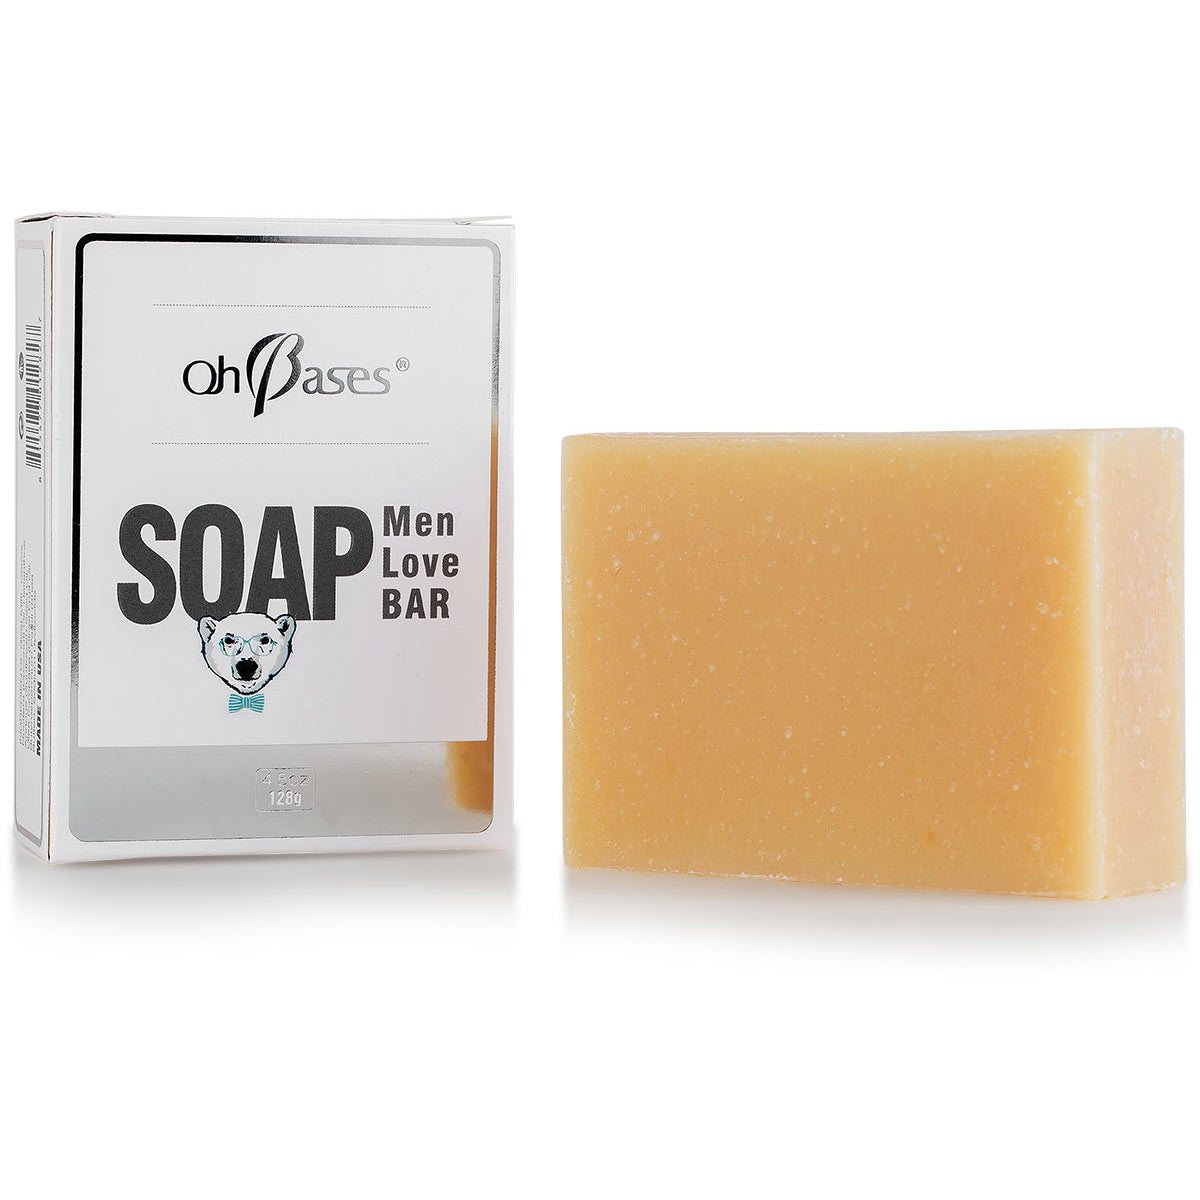 https://www.ohbases.com/cdn/shop/products/men-love-bar-soap-128g-ohbases-4.jpg?v=1527269029&width=1445